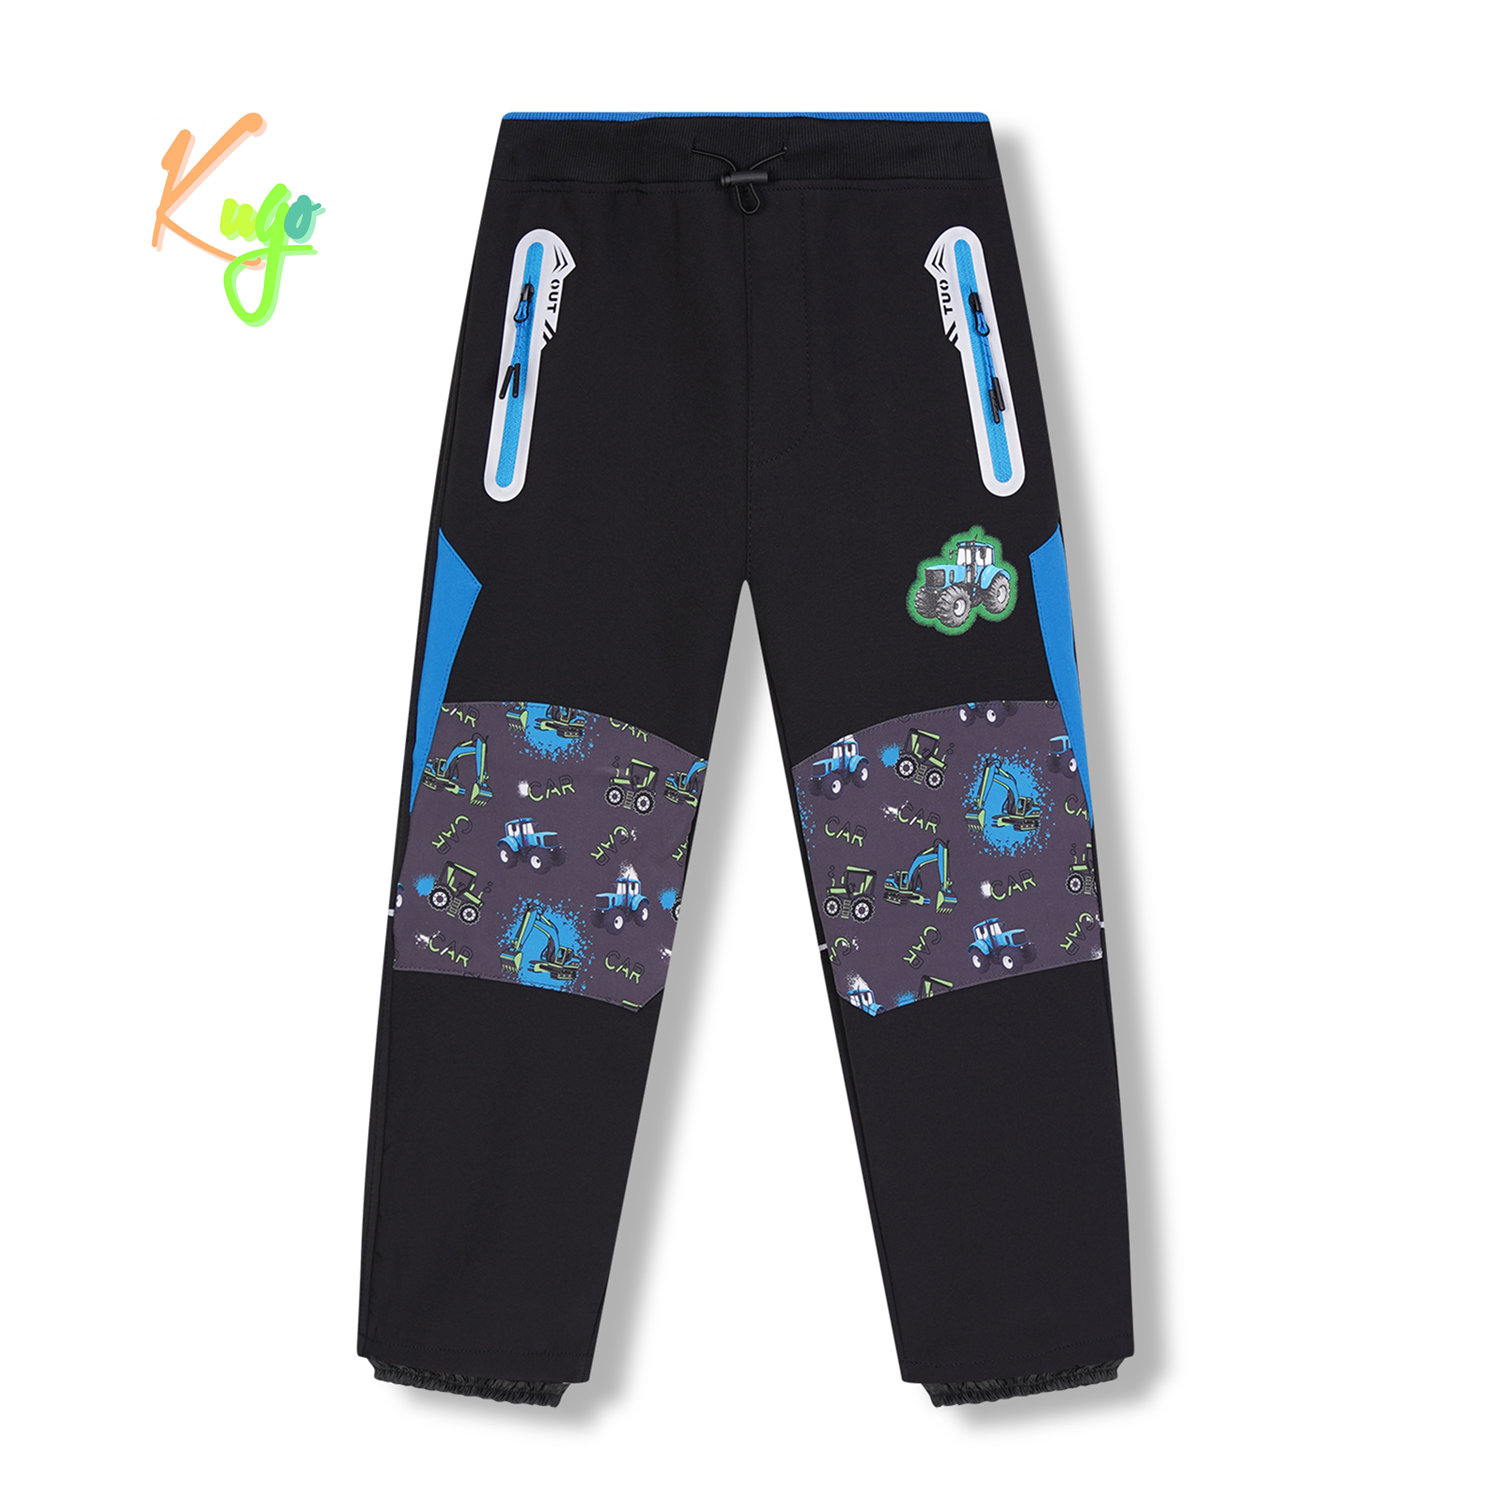 Chlapecké softshellové kalhoty, zateplené - KUGO HK5613, černá / tyrkysové zipy Barva: Černá, Velikost: 122